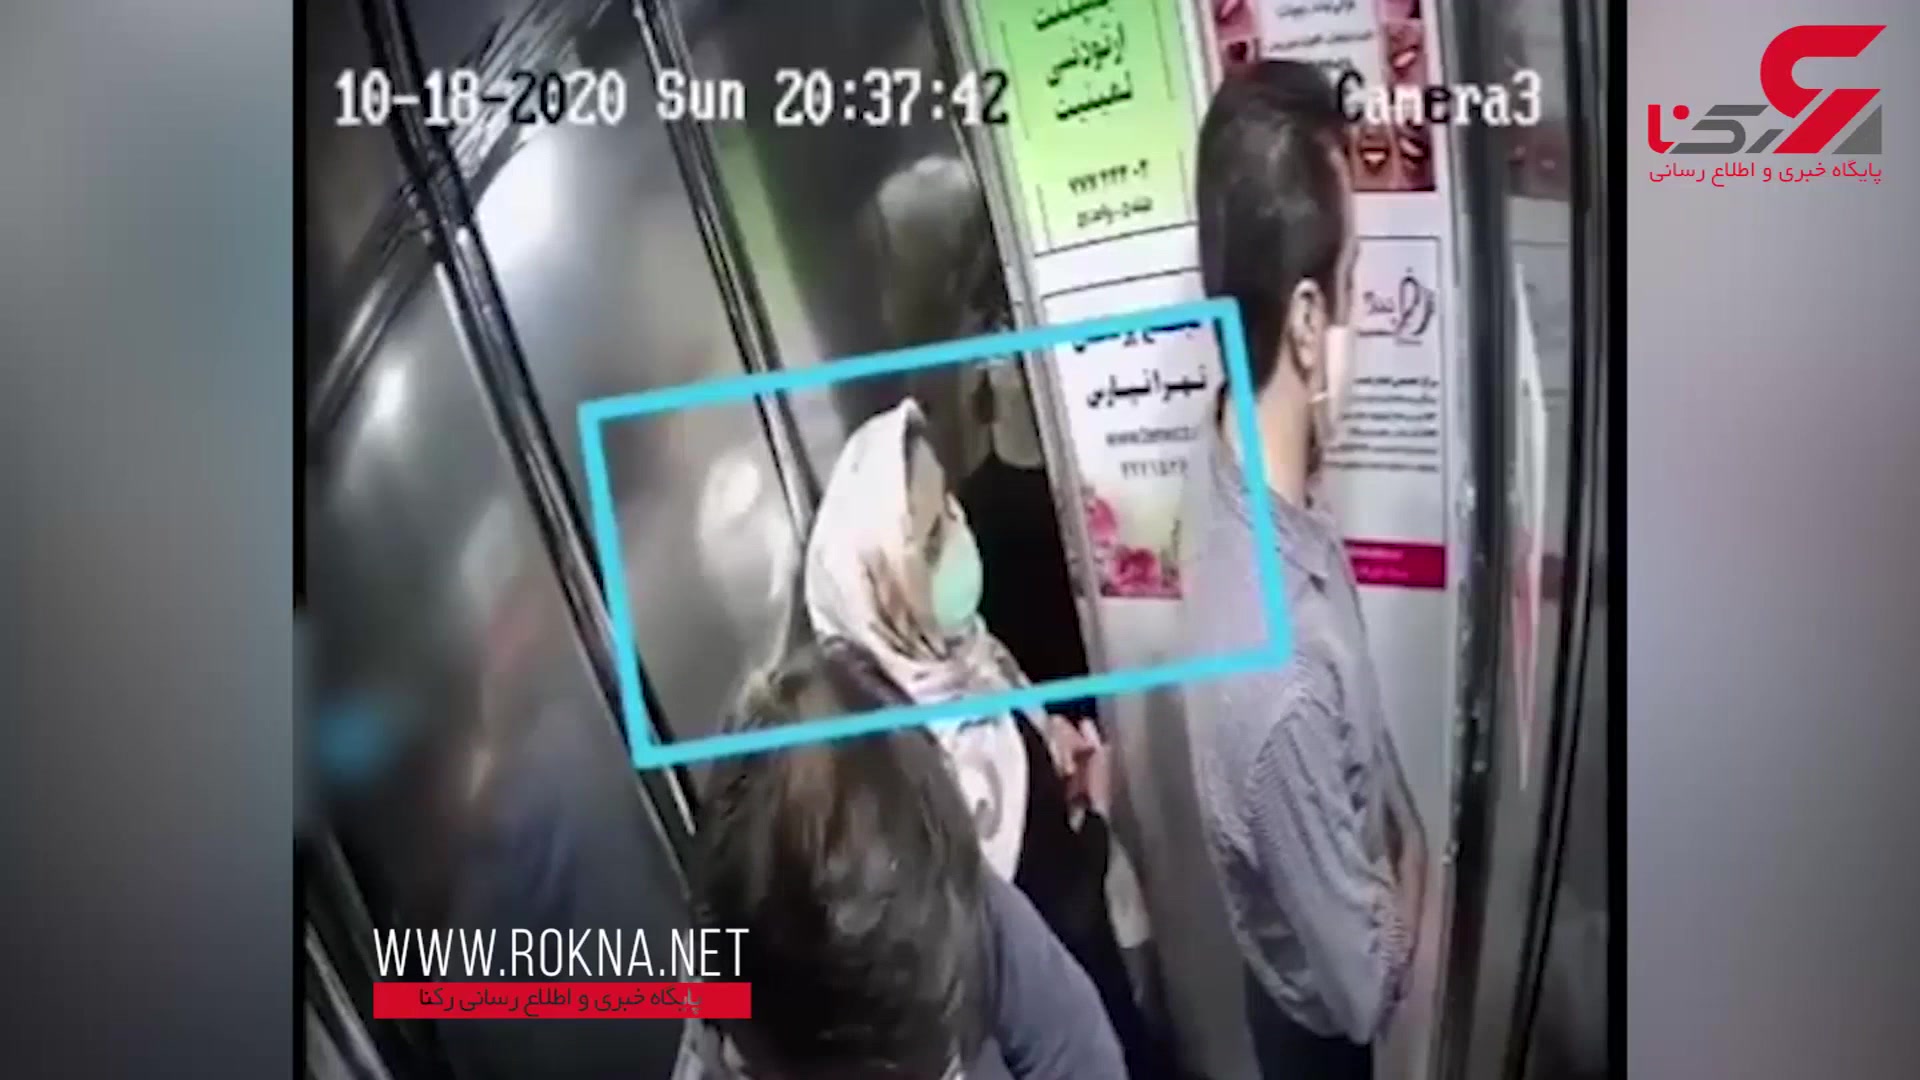 اقدام شیطانی زن تهرانی در آسانسور بین 2 مرد